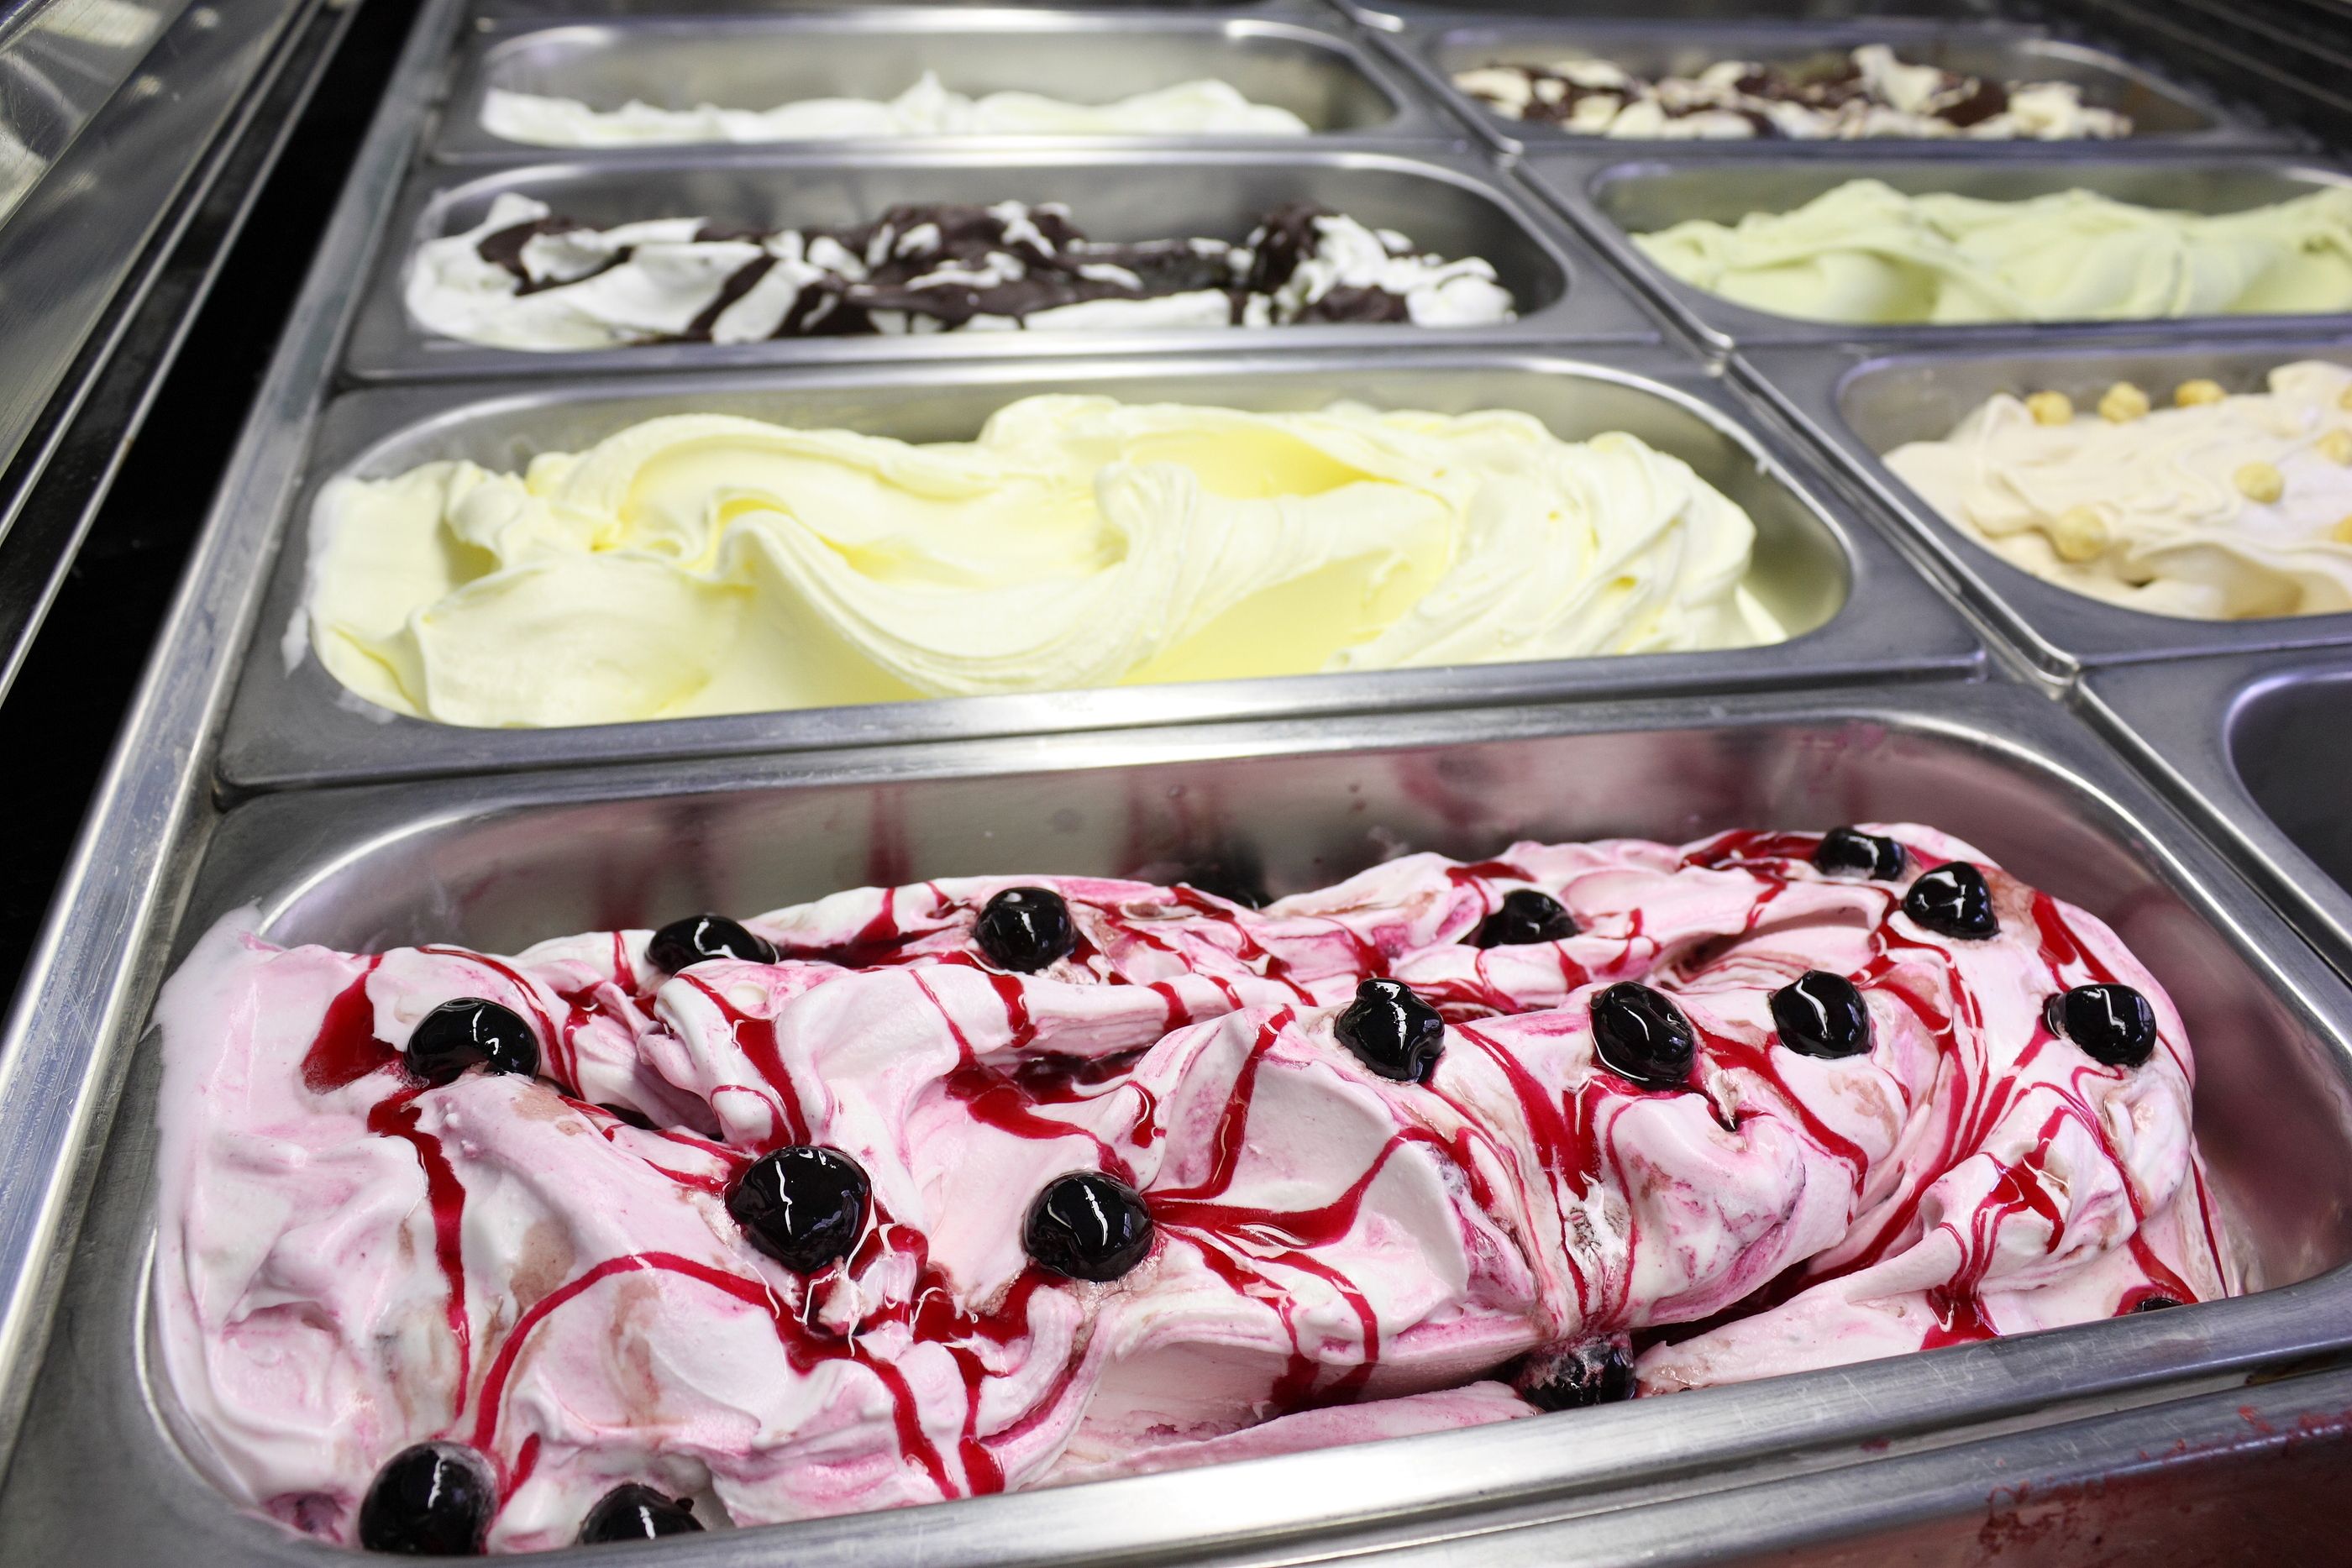 Sanidad alerta de la presencia de una sustancia tóxica en helados. Foto: Bigstock